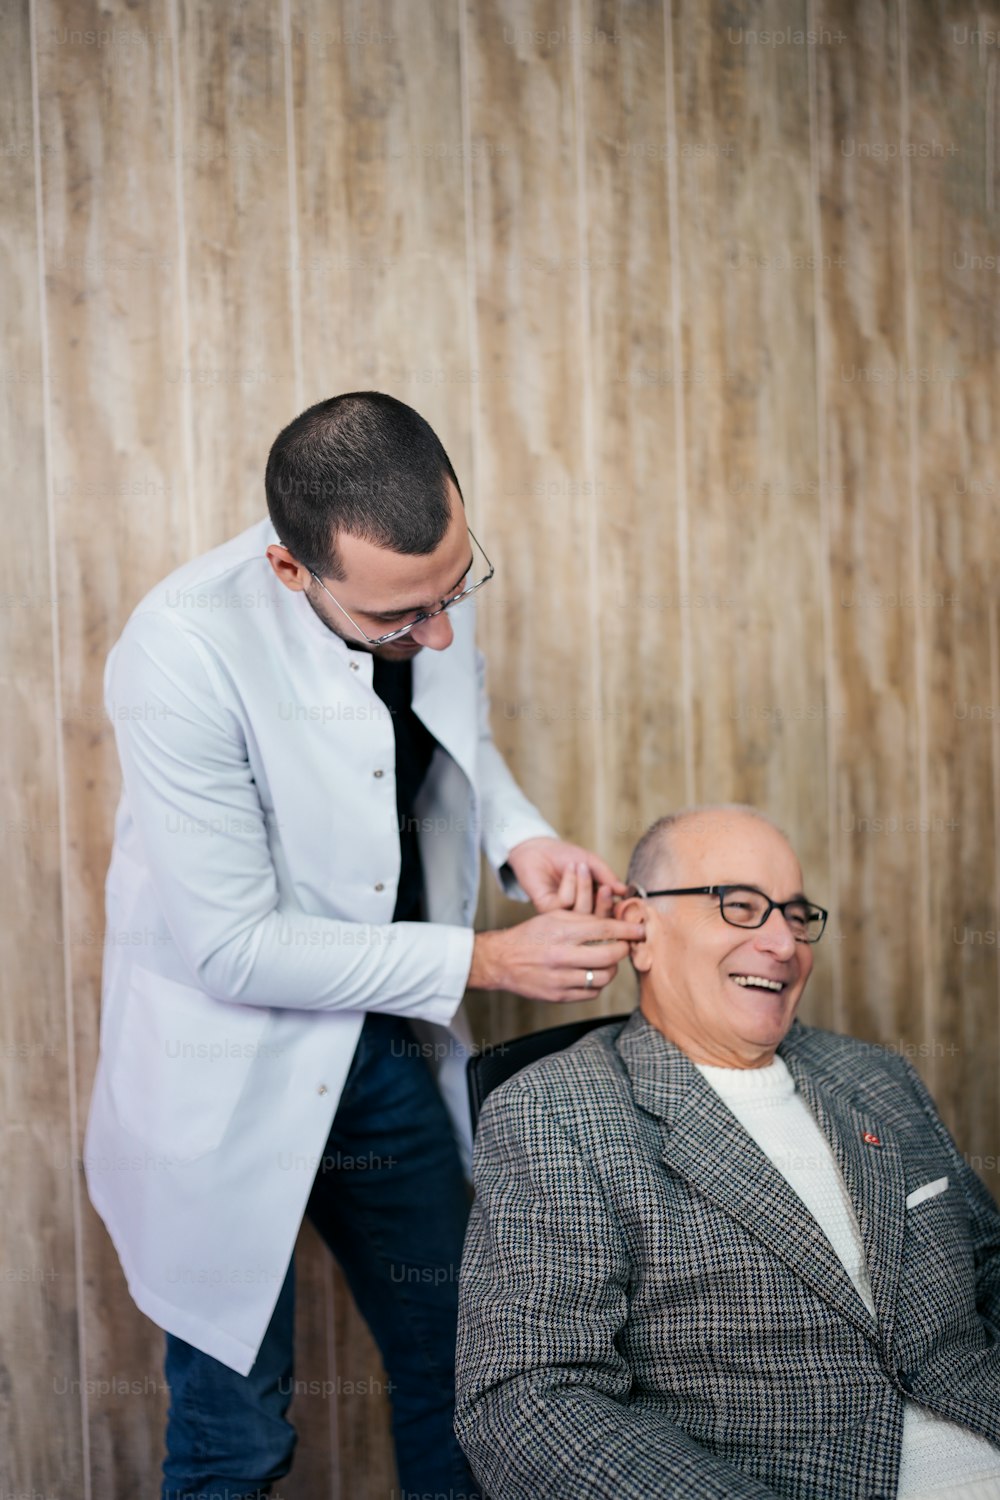 Ein Mann lässt sich von einem Friseur die Haare schneiden